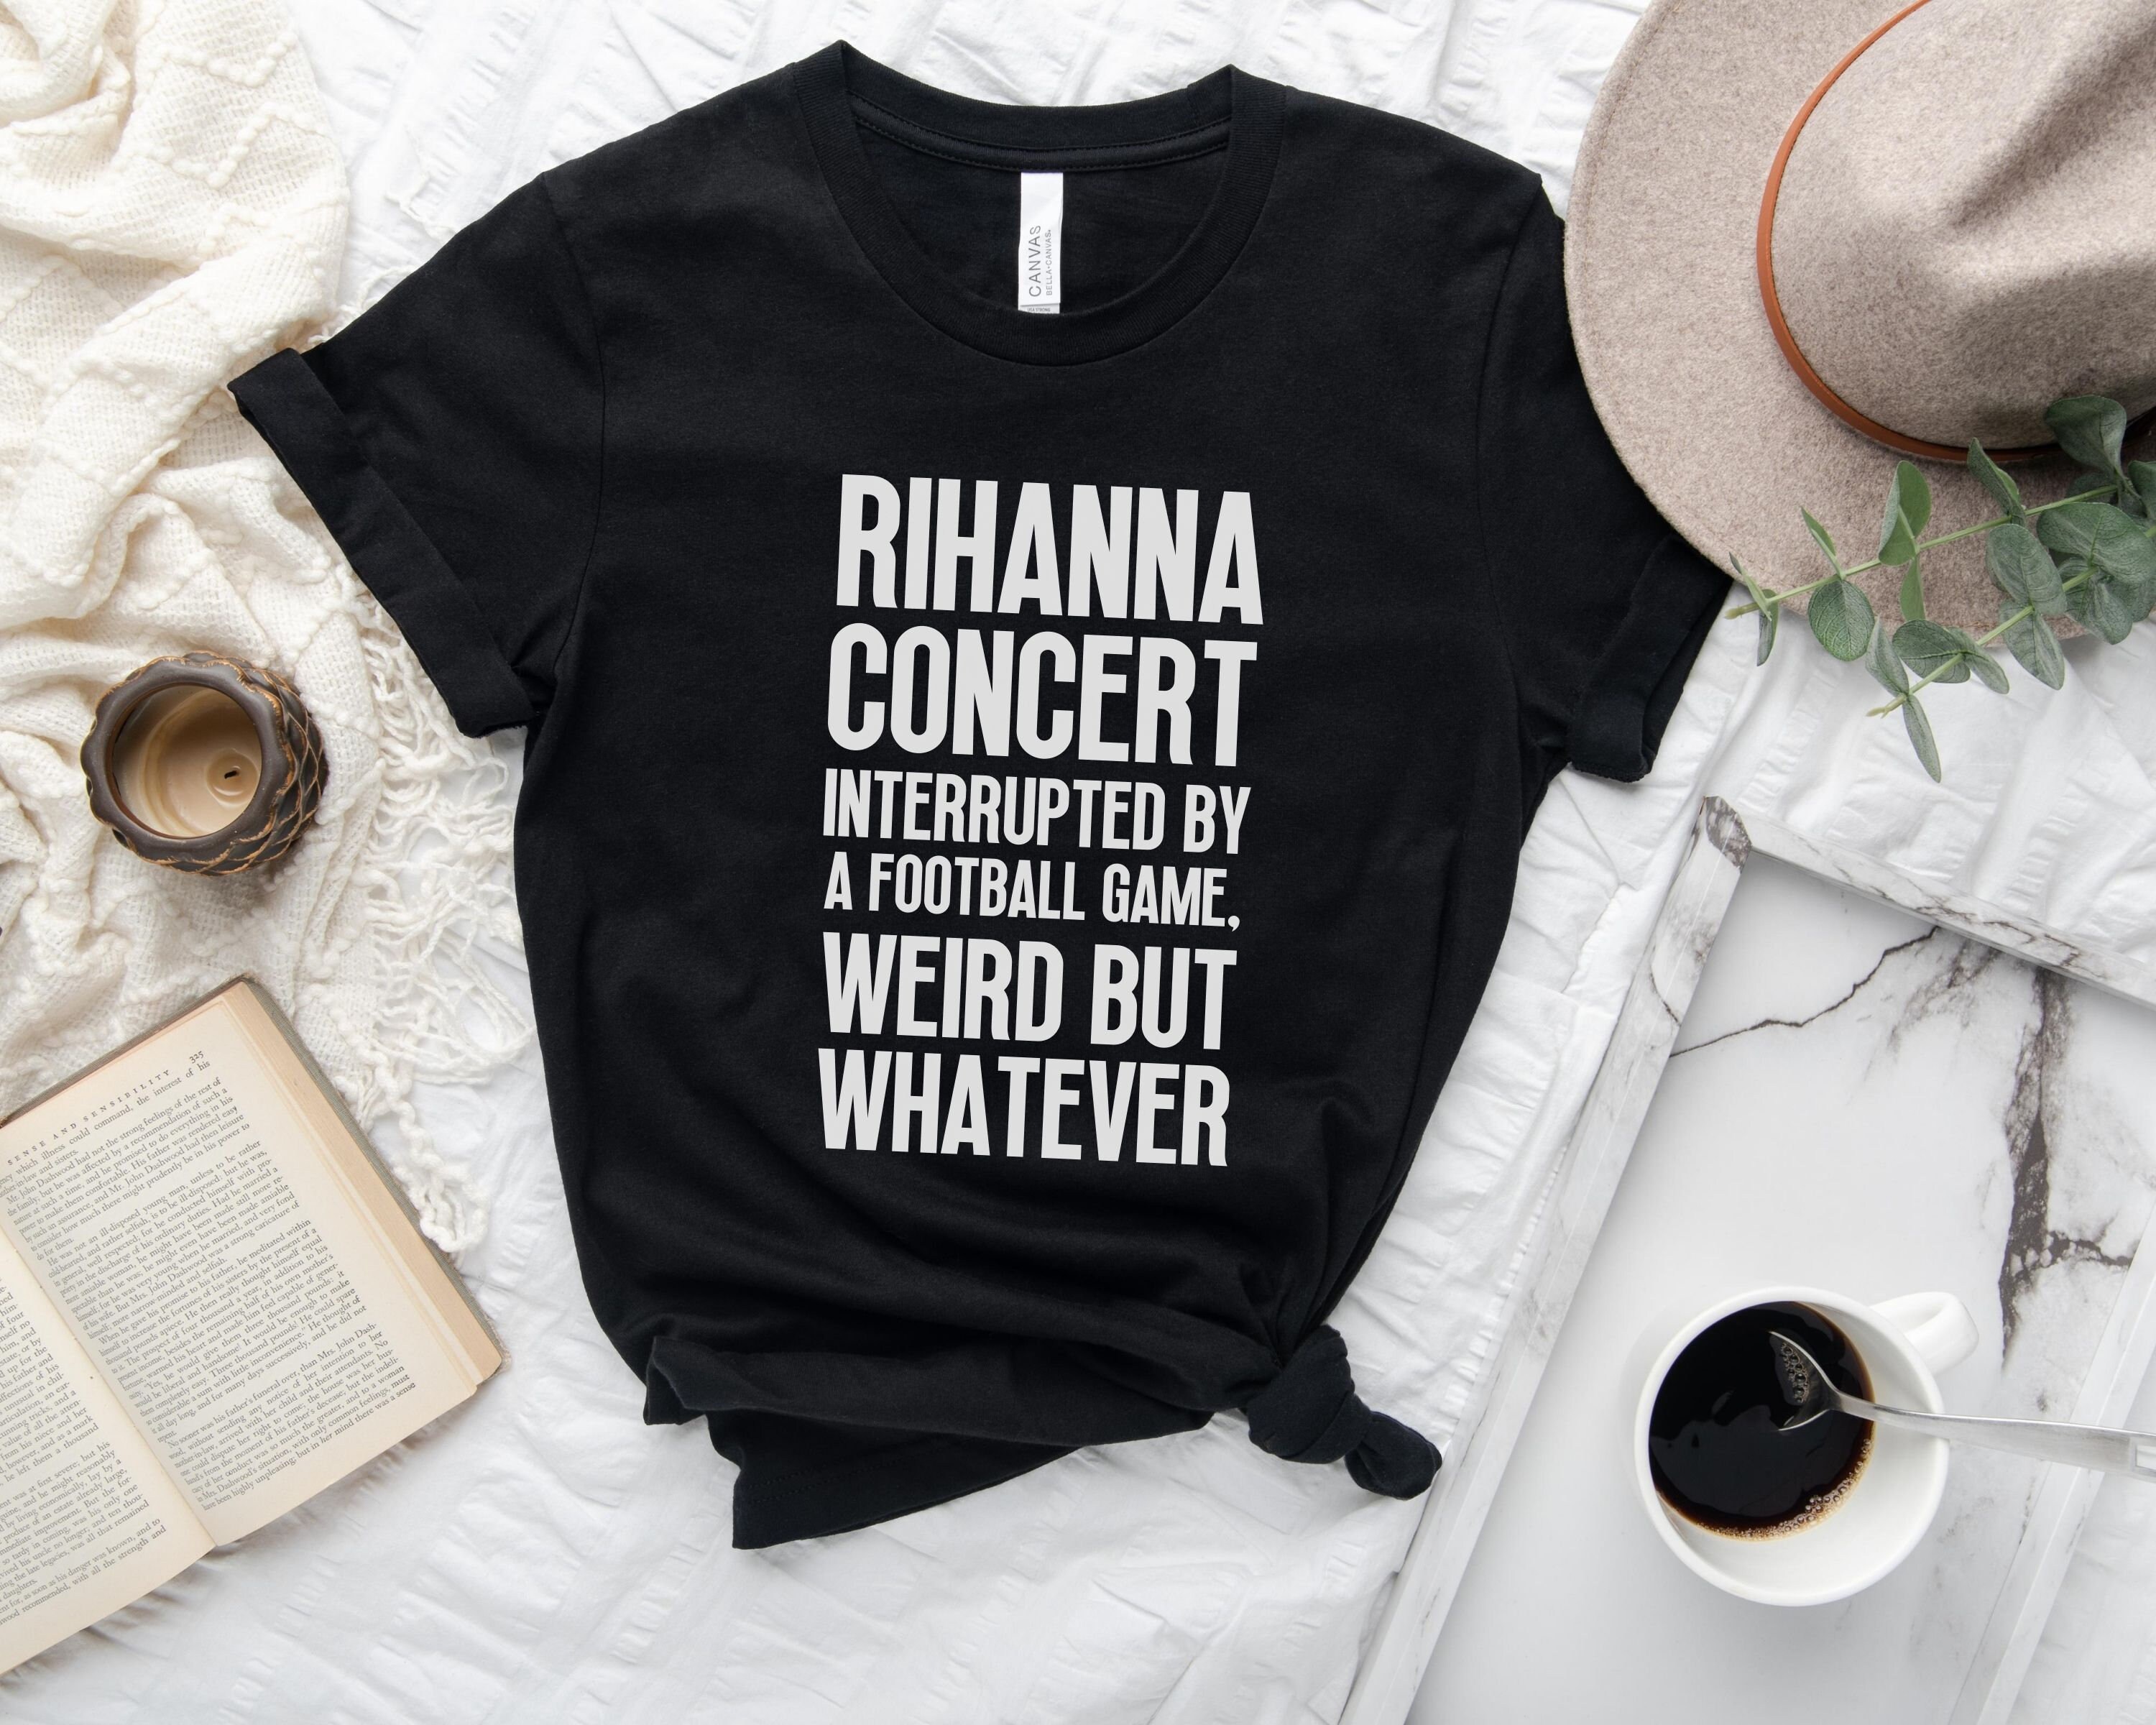 Discover Rihanna Concert Interrupted By A Football Game Weird But Whatever Shirt, Rihanna Football T-Shirt, Halftime Rihanna T-Shirt